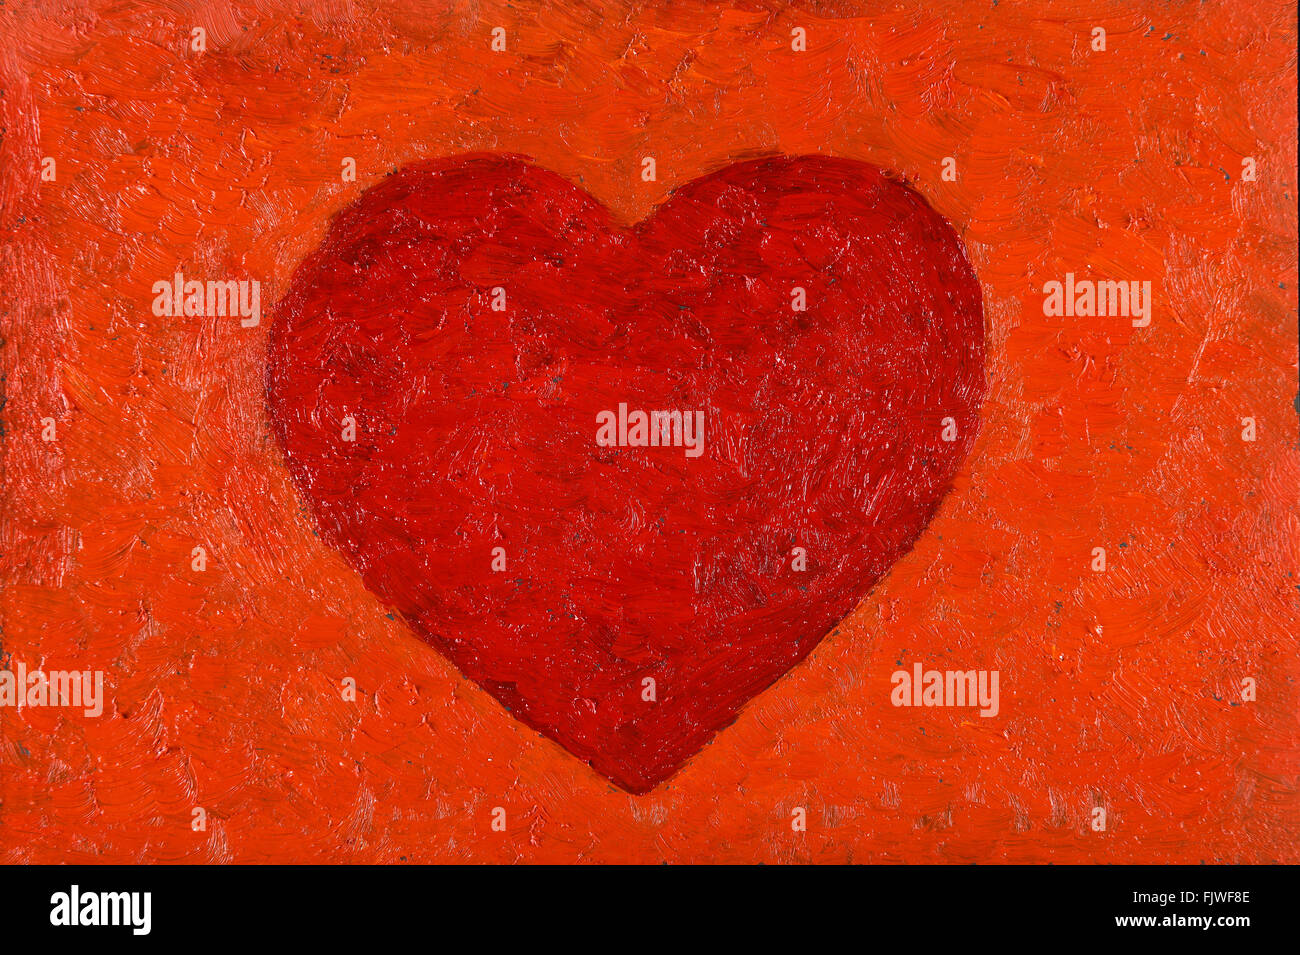 Ölgemälde von rotes Herz auf orangem Hintergrund Stockfoto